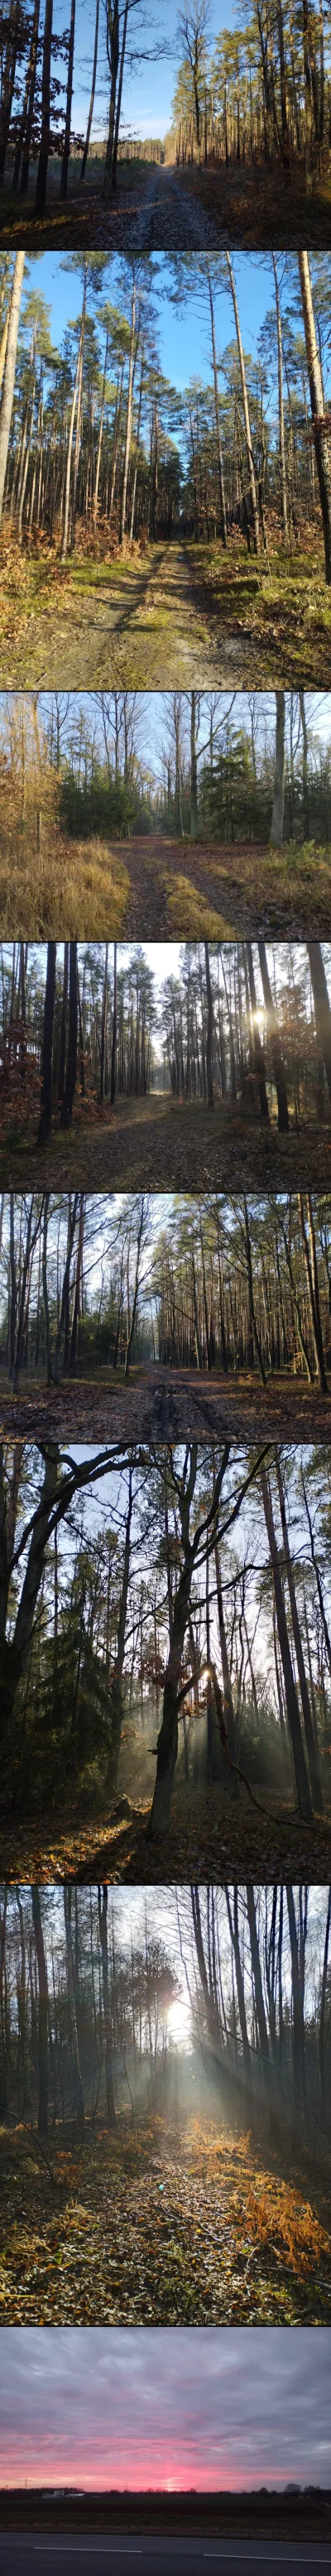 DwaNiedzwiedzie - No dobra, tego lasu to ledwie ze cztery kilometry były (w tym z 500...